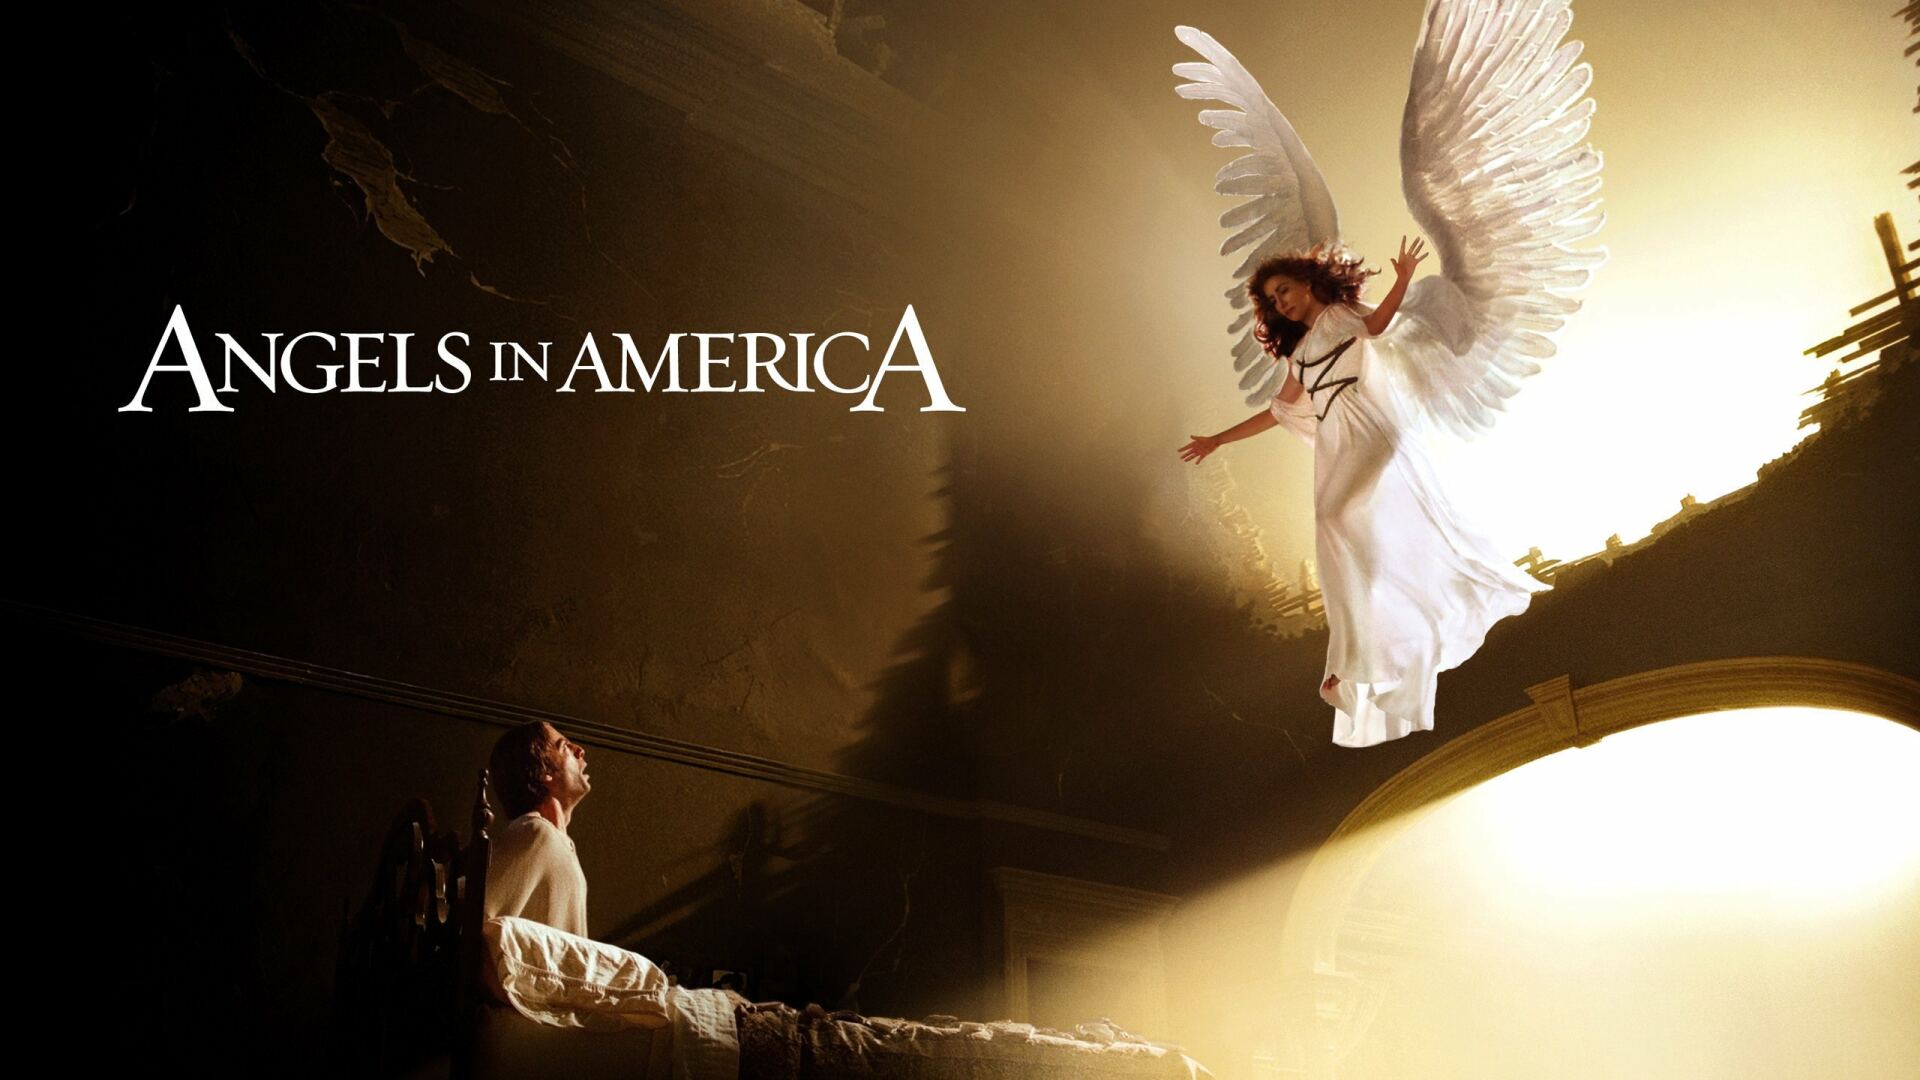 ანგელოზები ამერიკაში / Angels in America